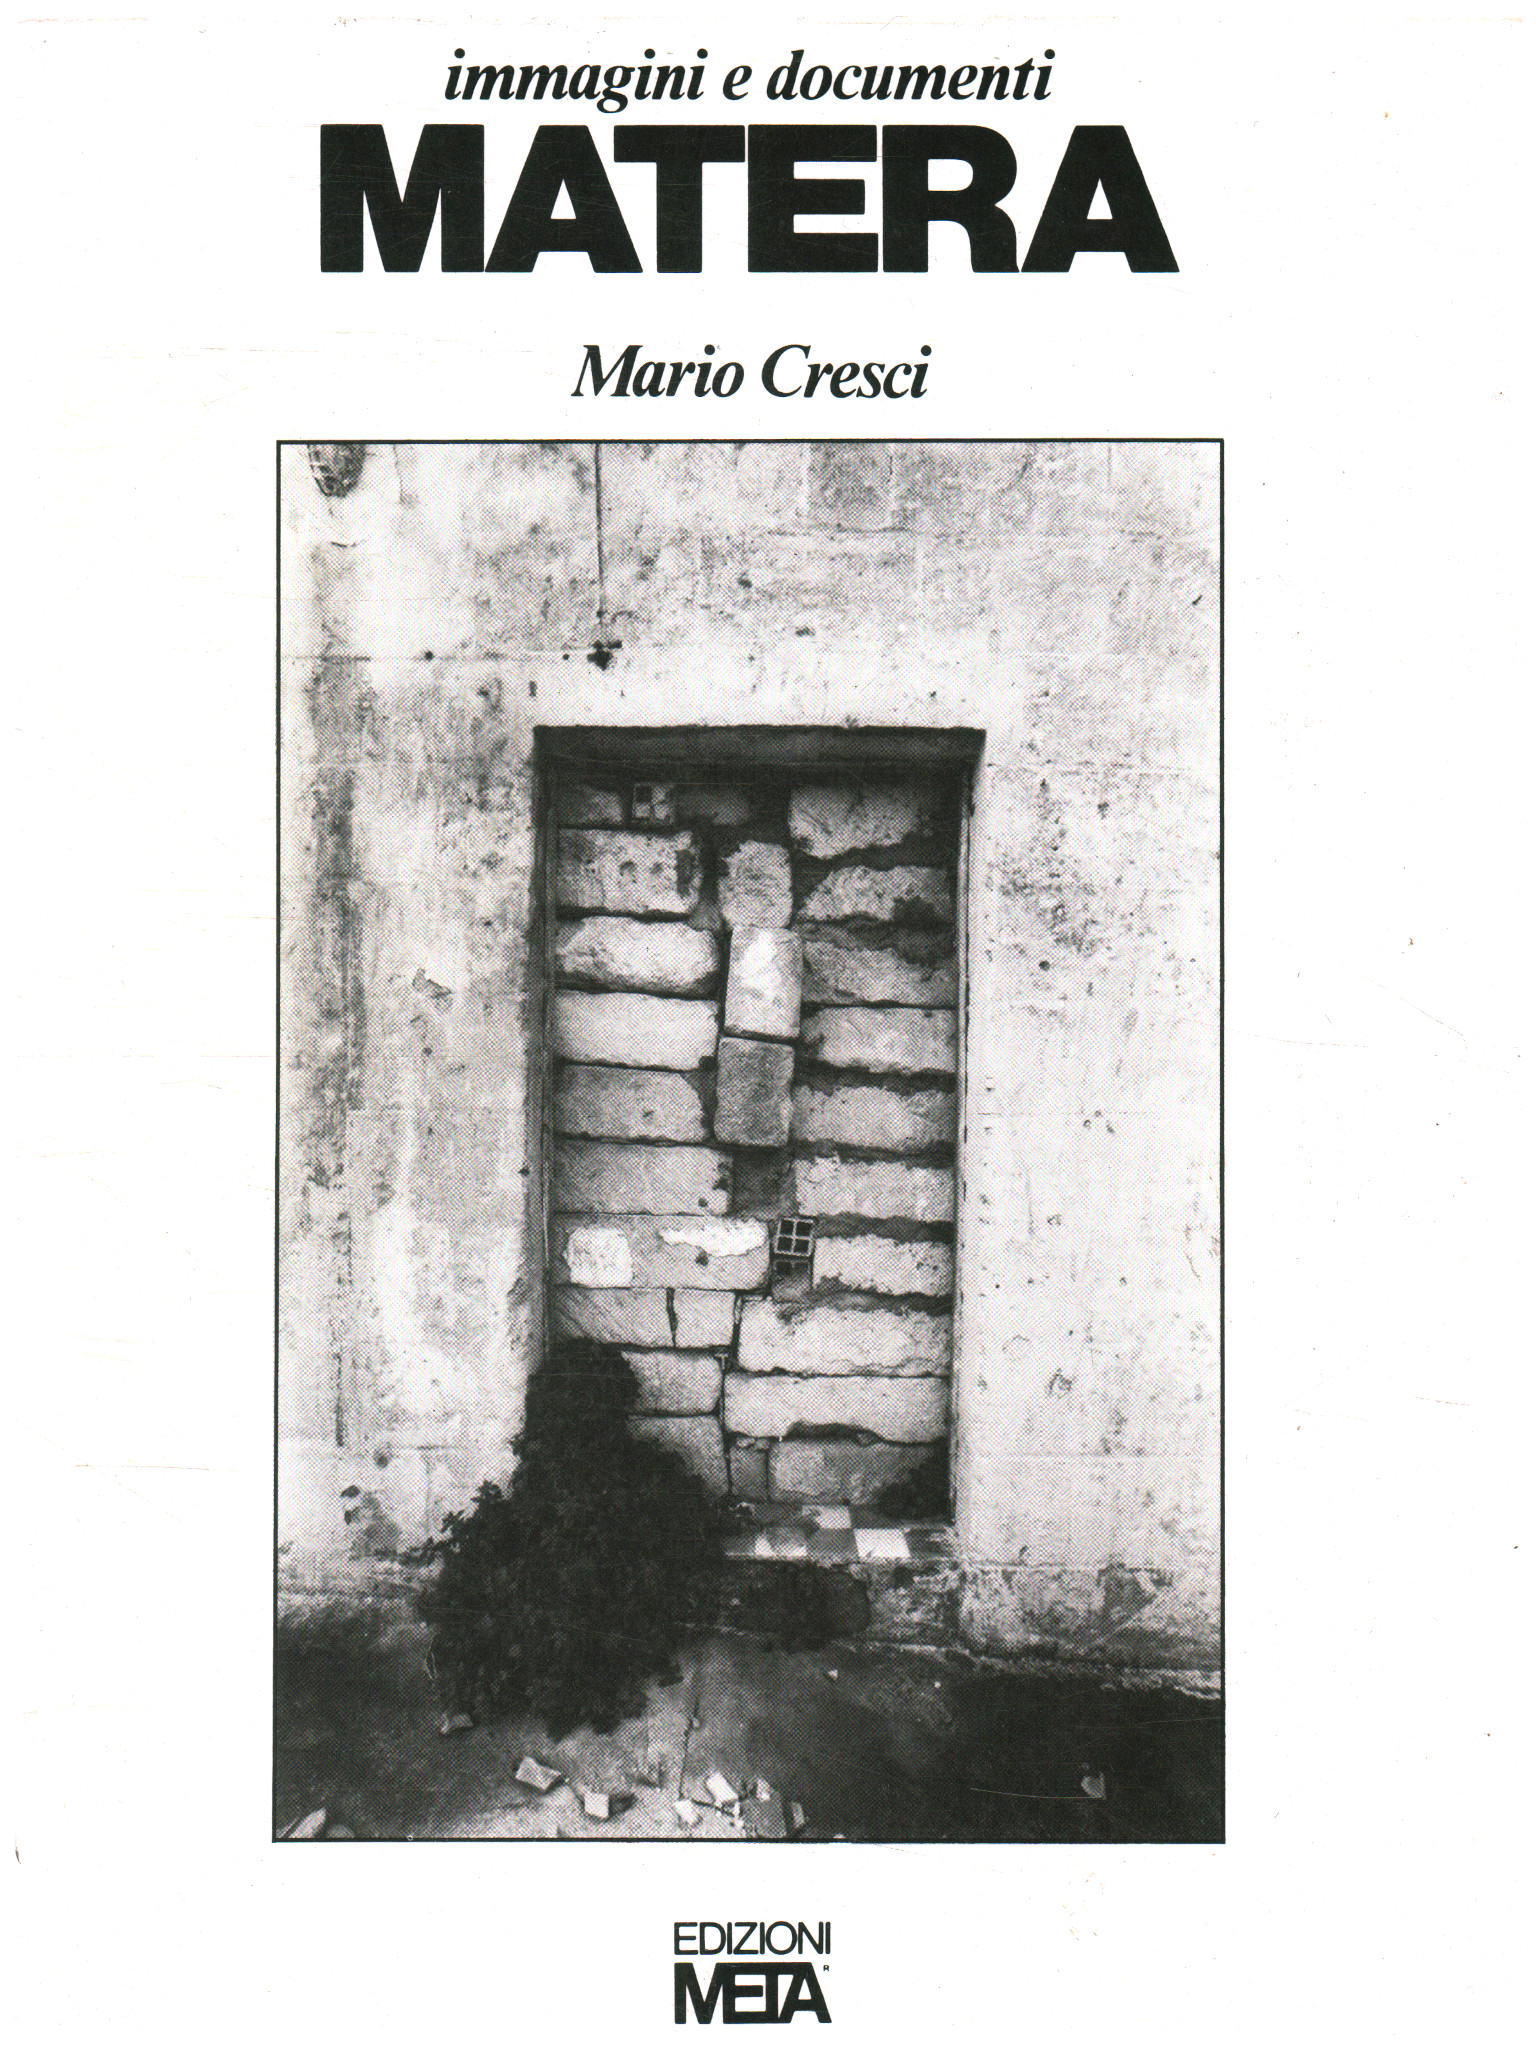 Bilder und Dokumente Matera